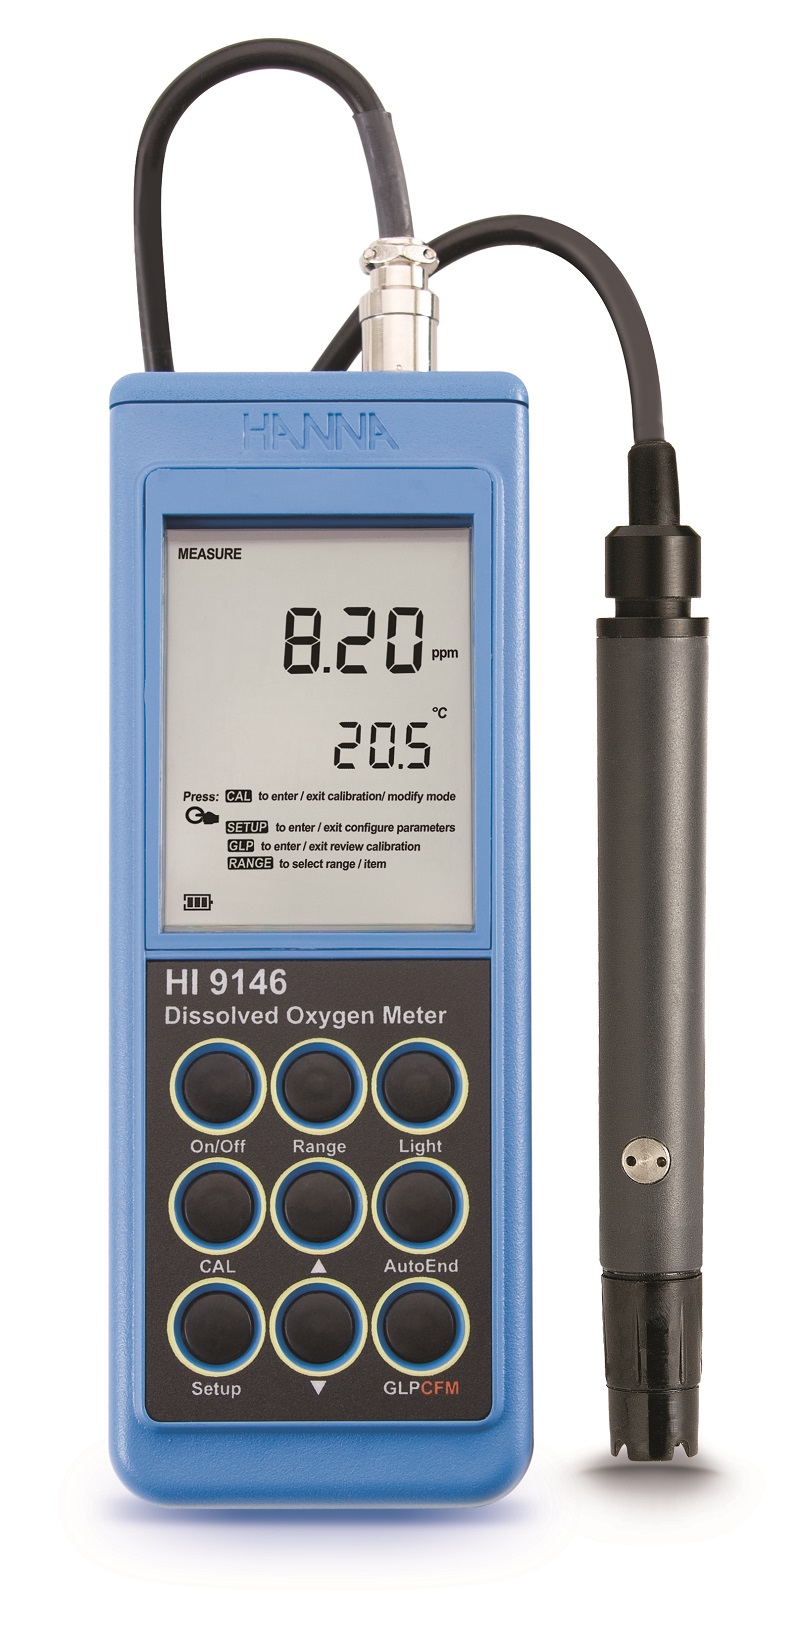 Testeur de qualité de l'eau Hedao Digital Pen pour laboratoire, pH